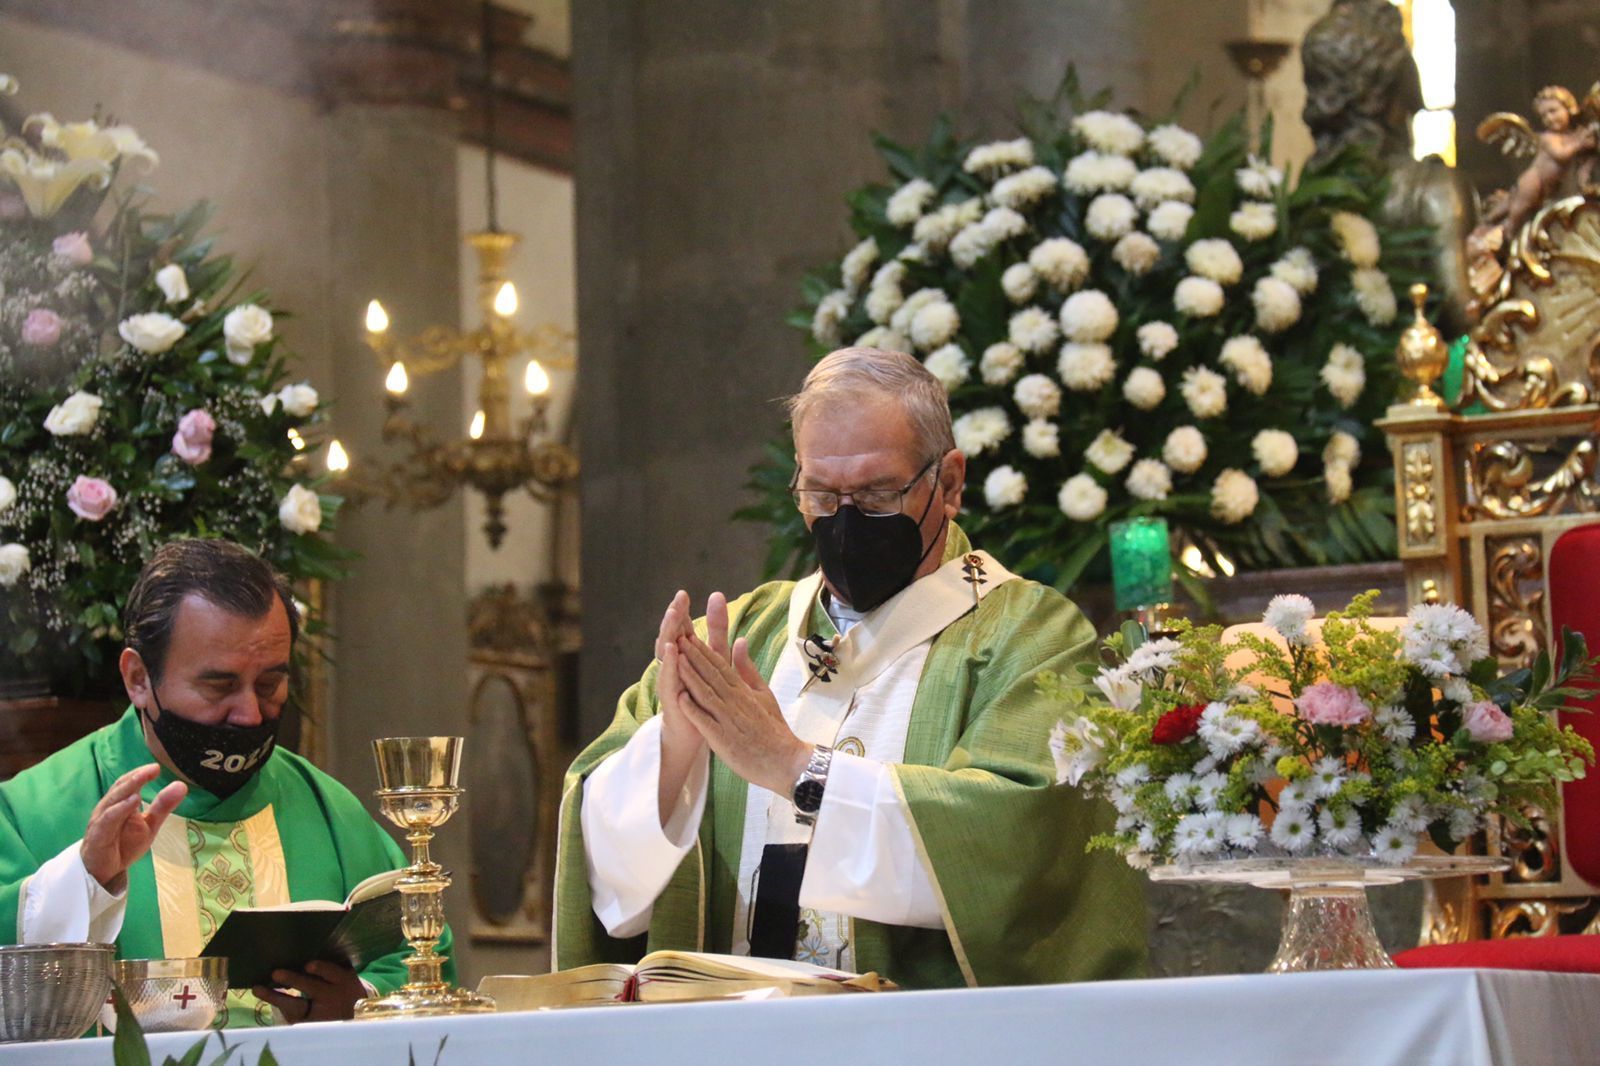 Se debe ser generoso con quienes lo necesitan, en Oaxaca hay muchos pobres: Arzobispo